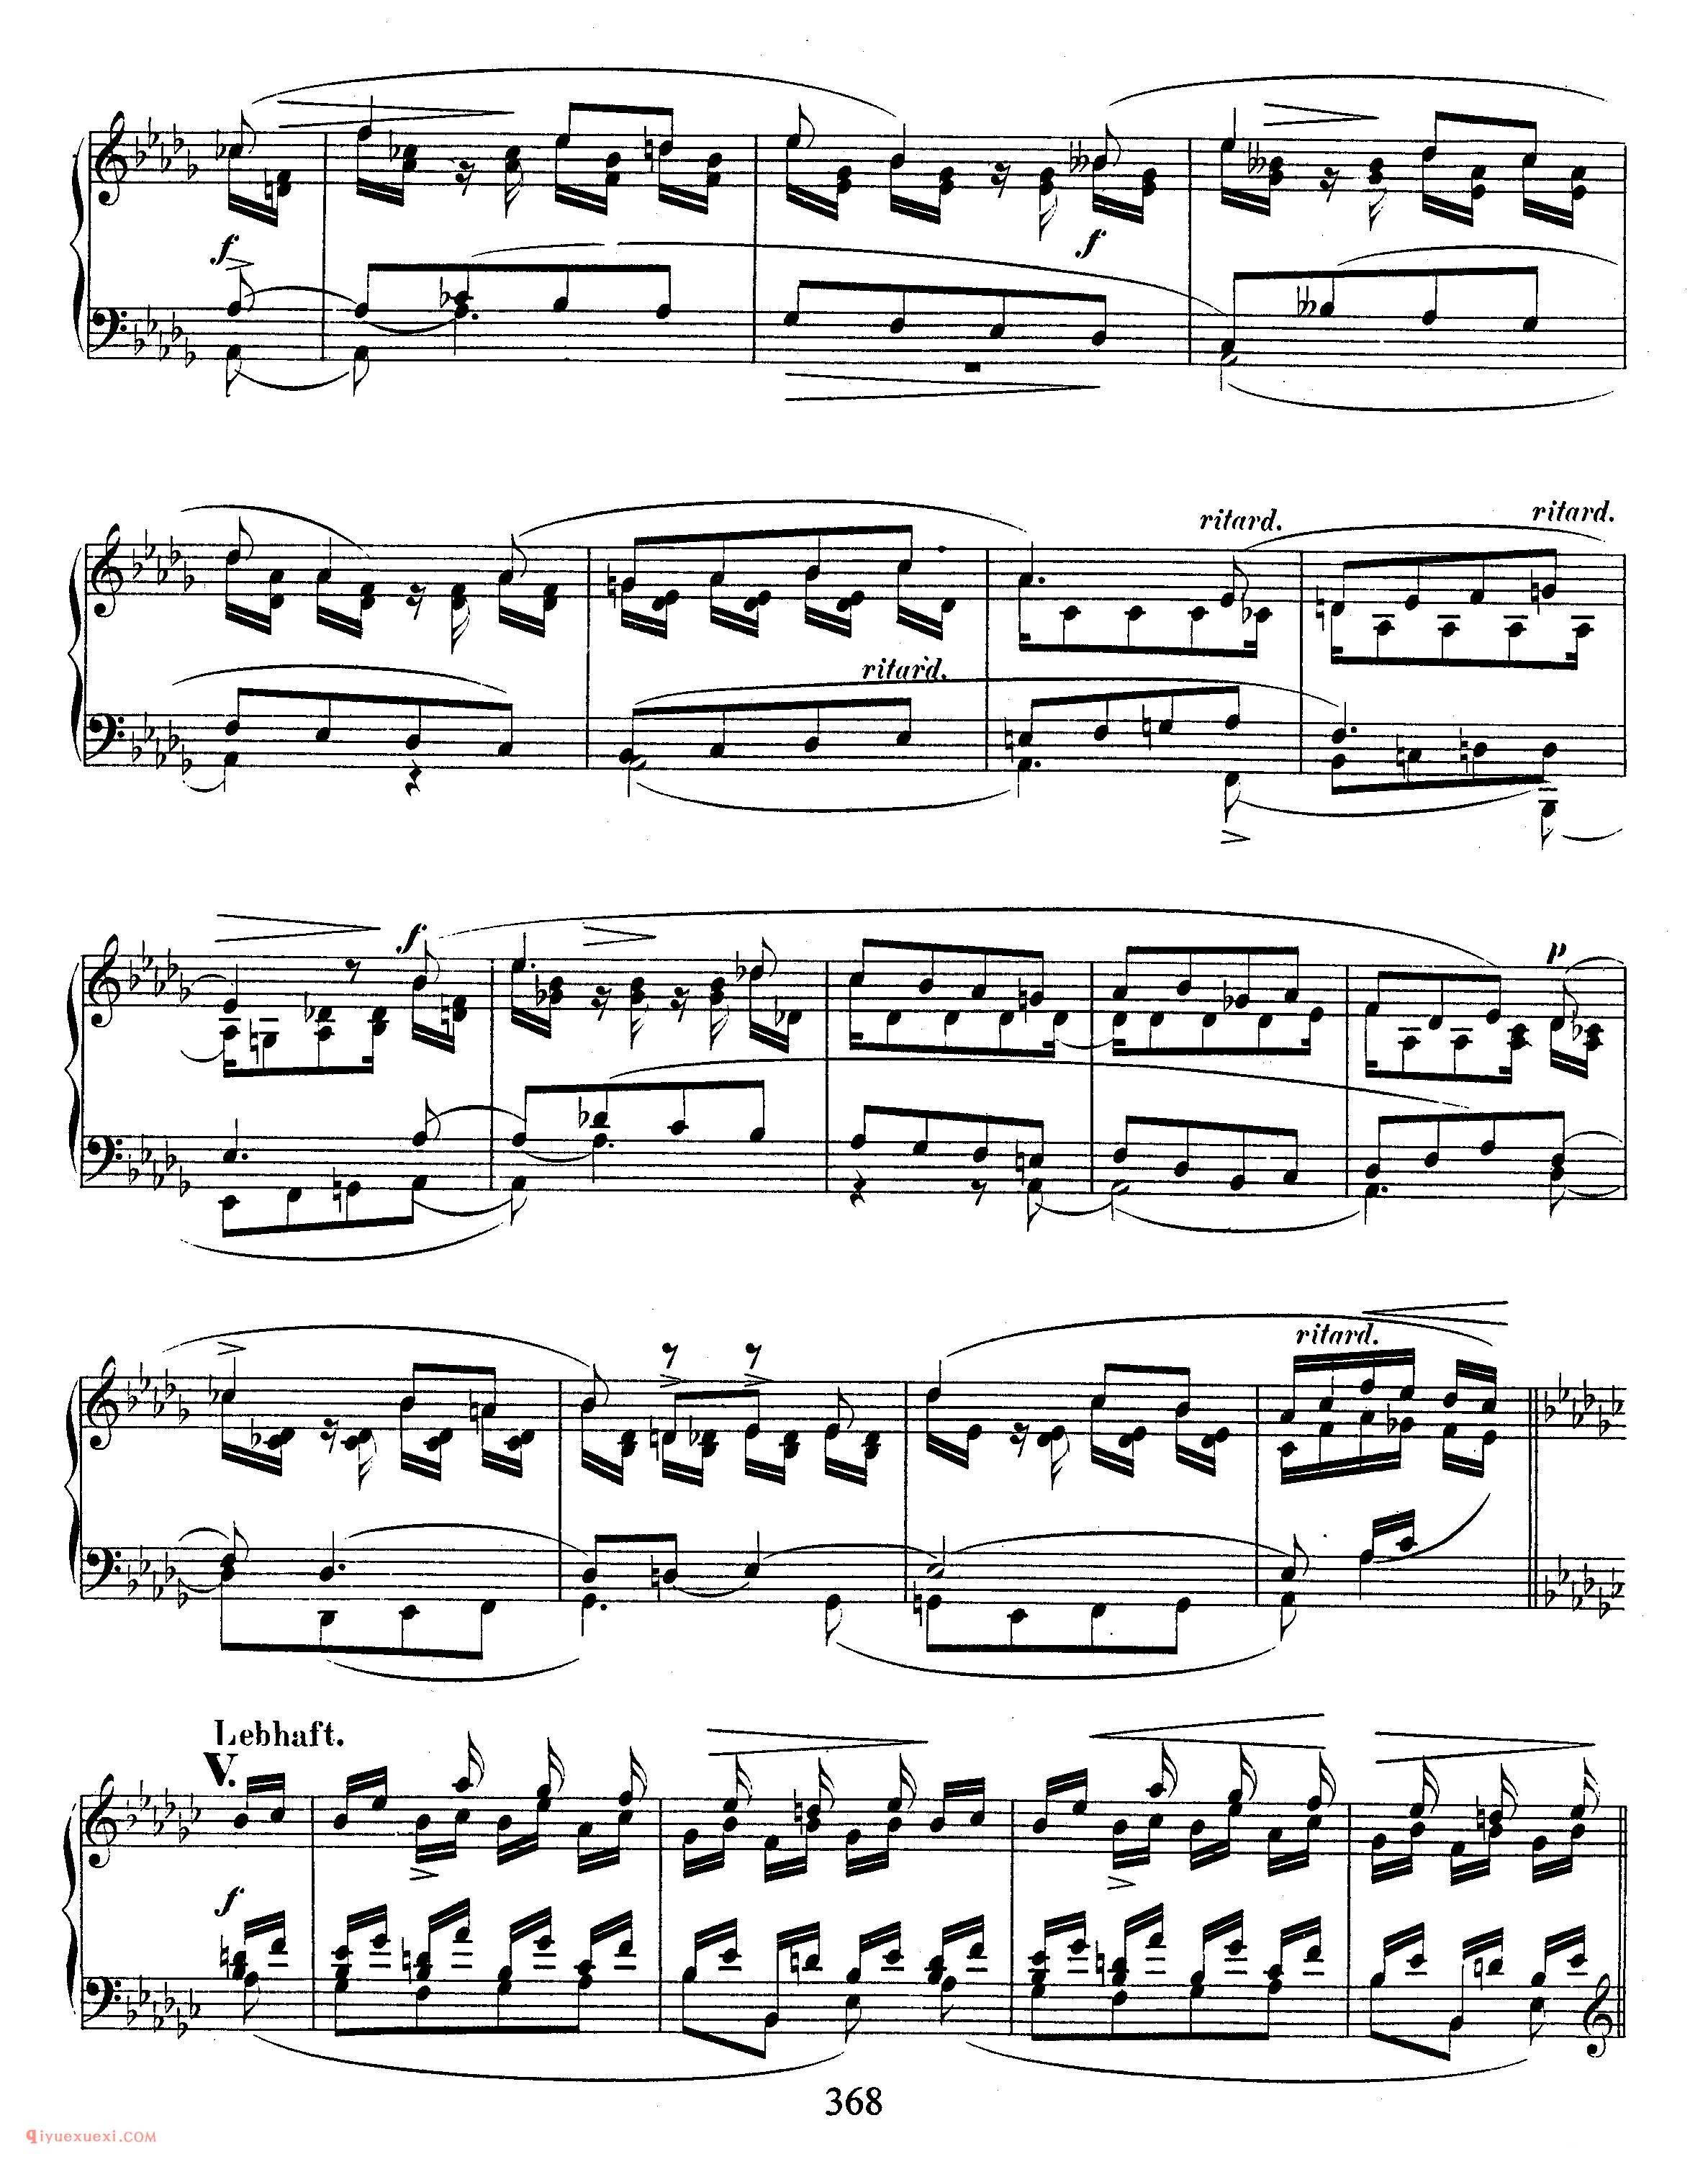 舒曼《花之歌》作品19_Schumann Blumenstuck Op.19_舒曼钢琴谱